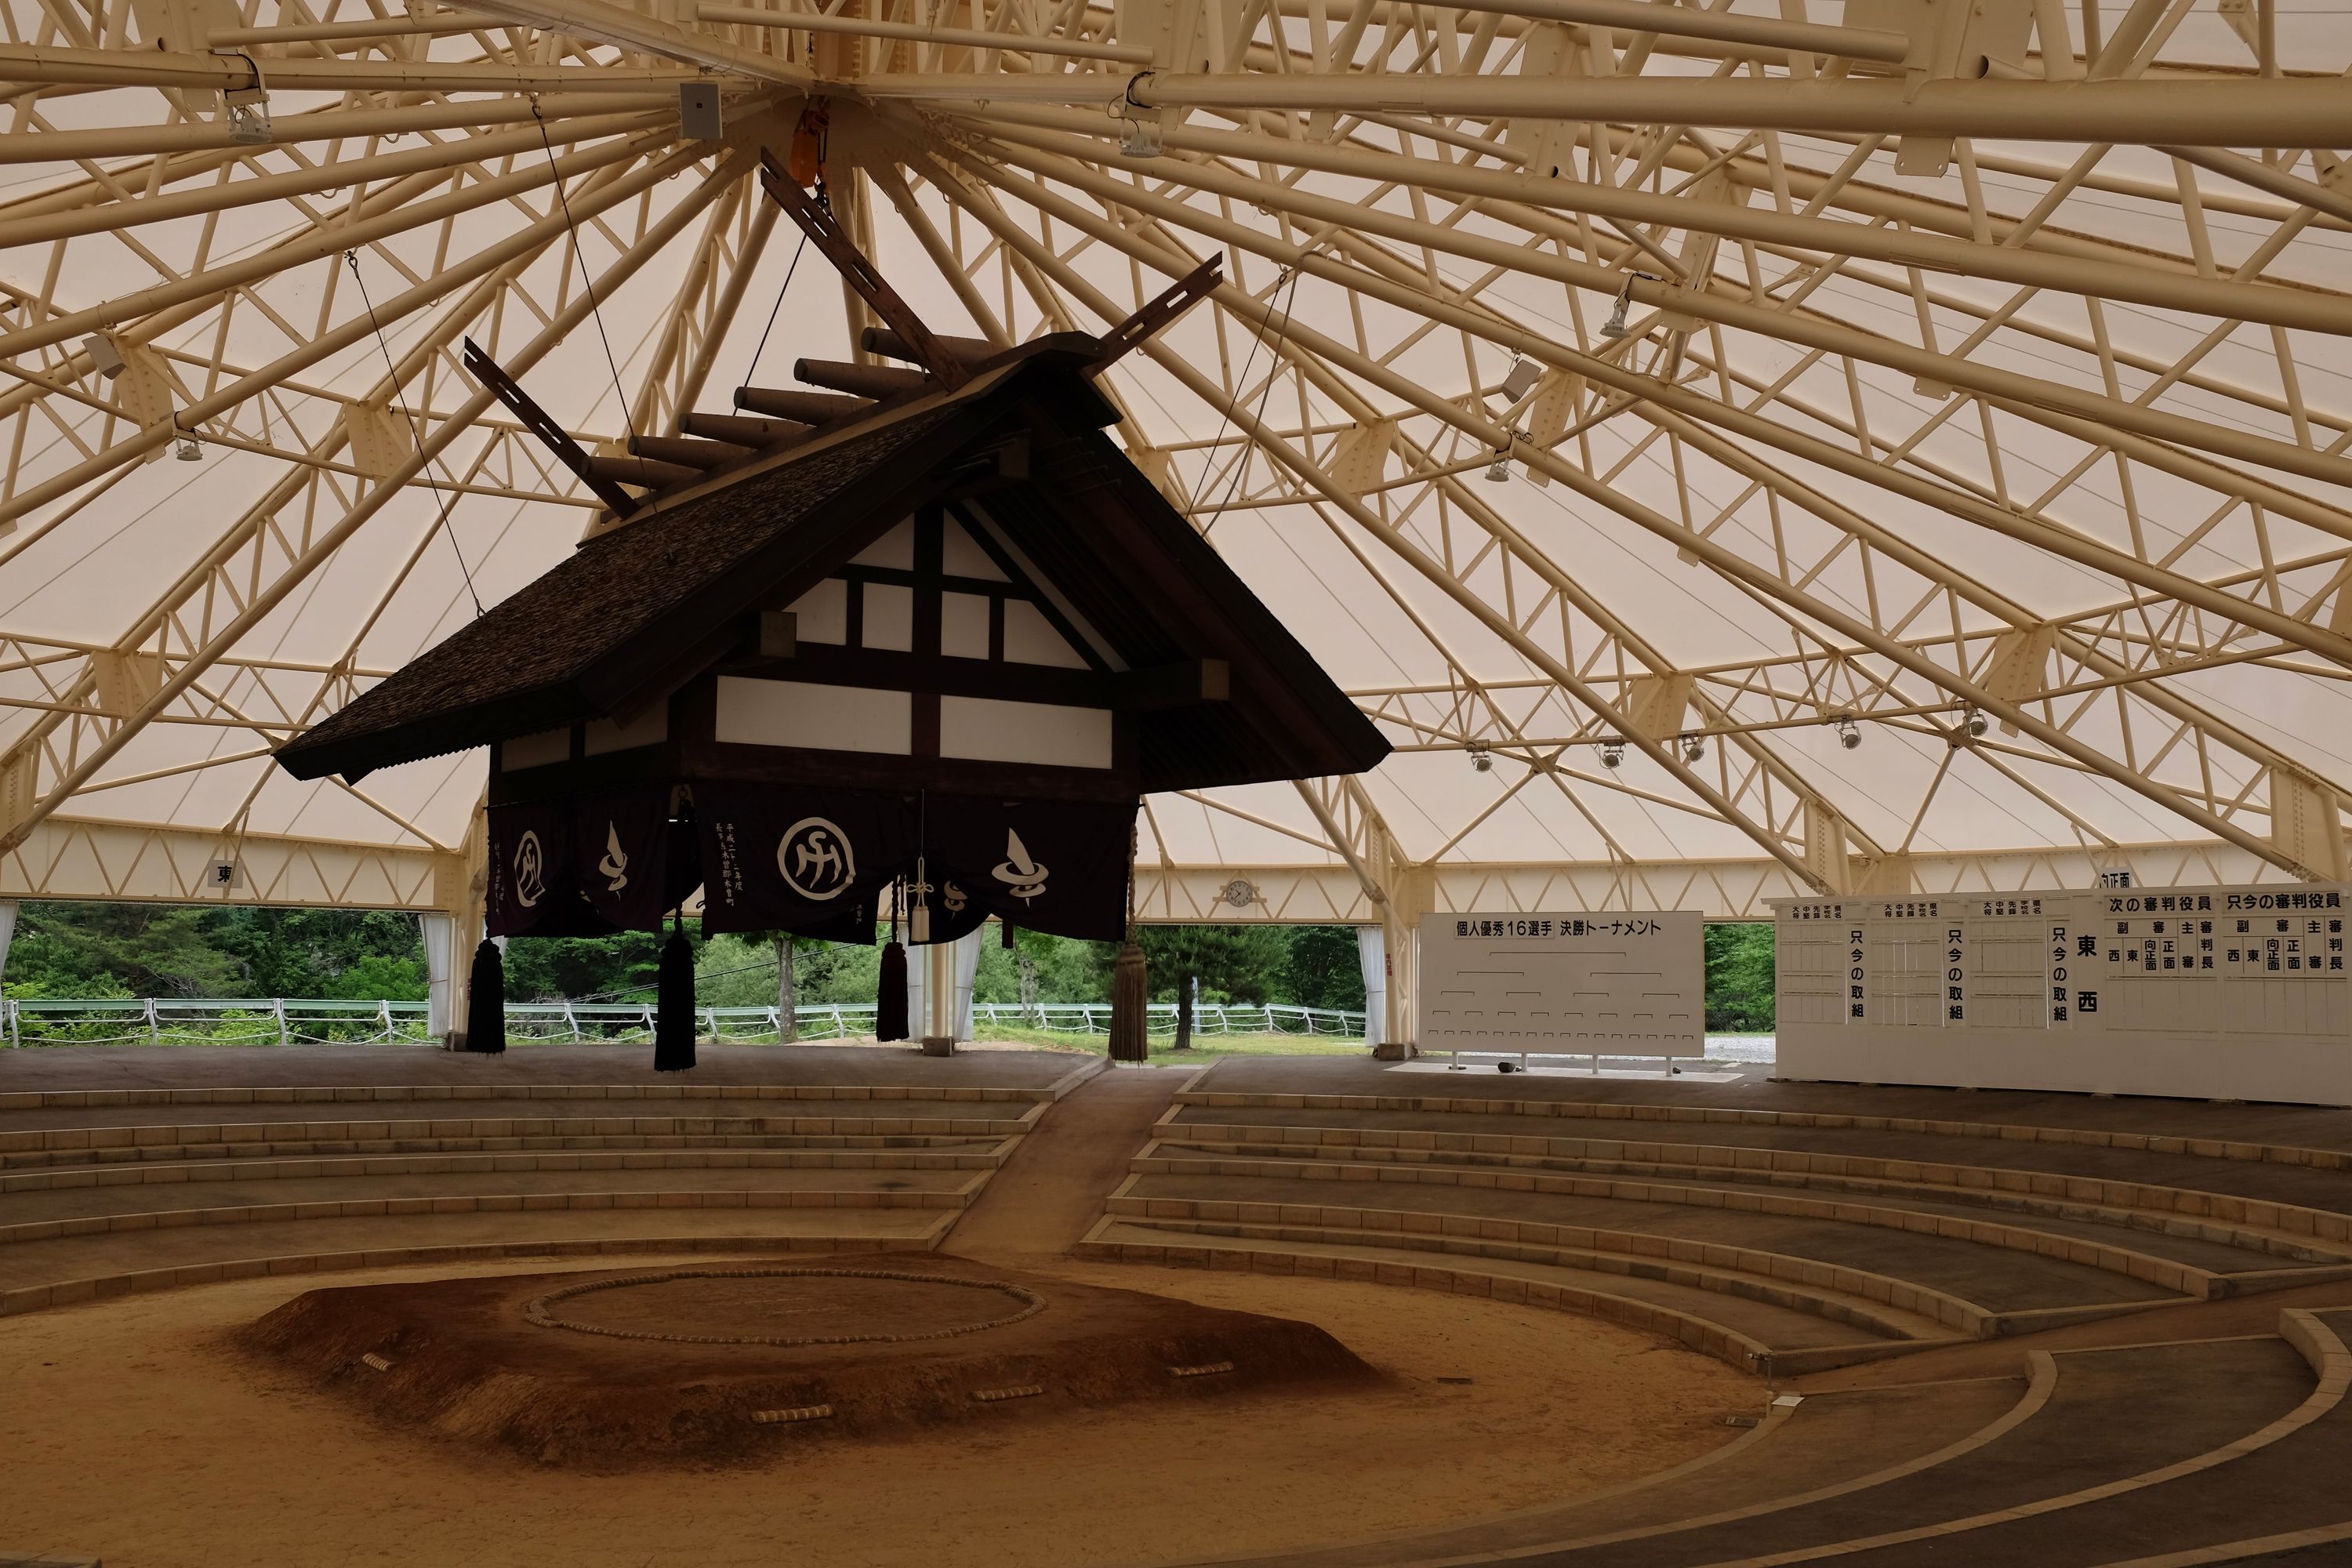 A roadside sumo arena.